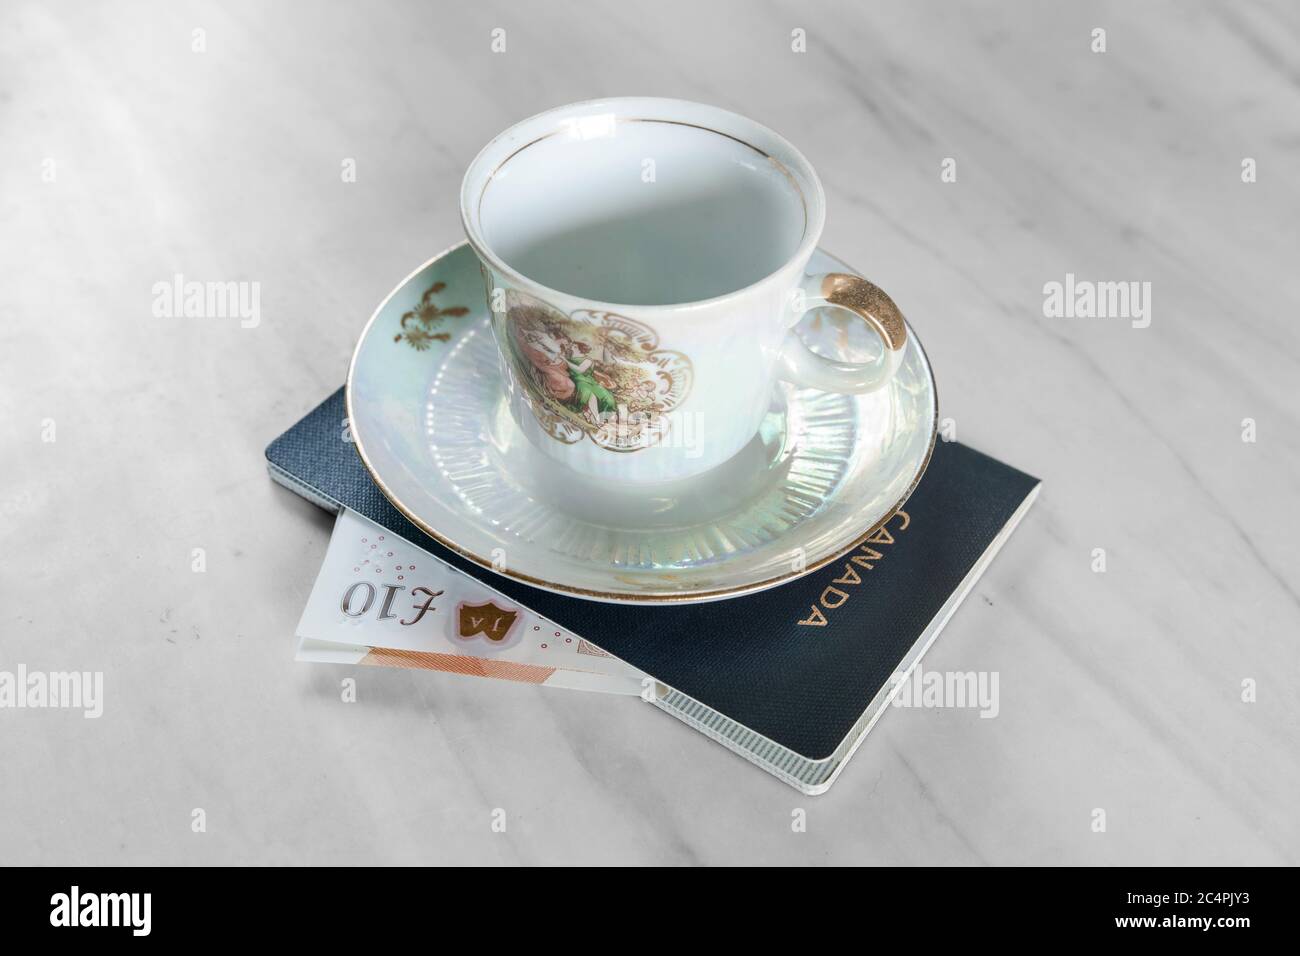 Sotto una tazza da tè decorata graziosamente, vediamo il passaporto canadese in cui è scivolato una banconota di 10 libbre del Regno Unito. Foto Stock